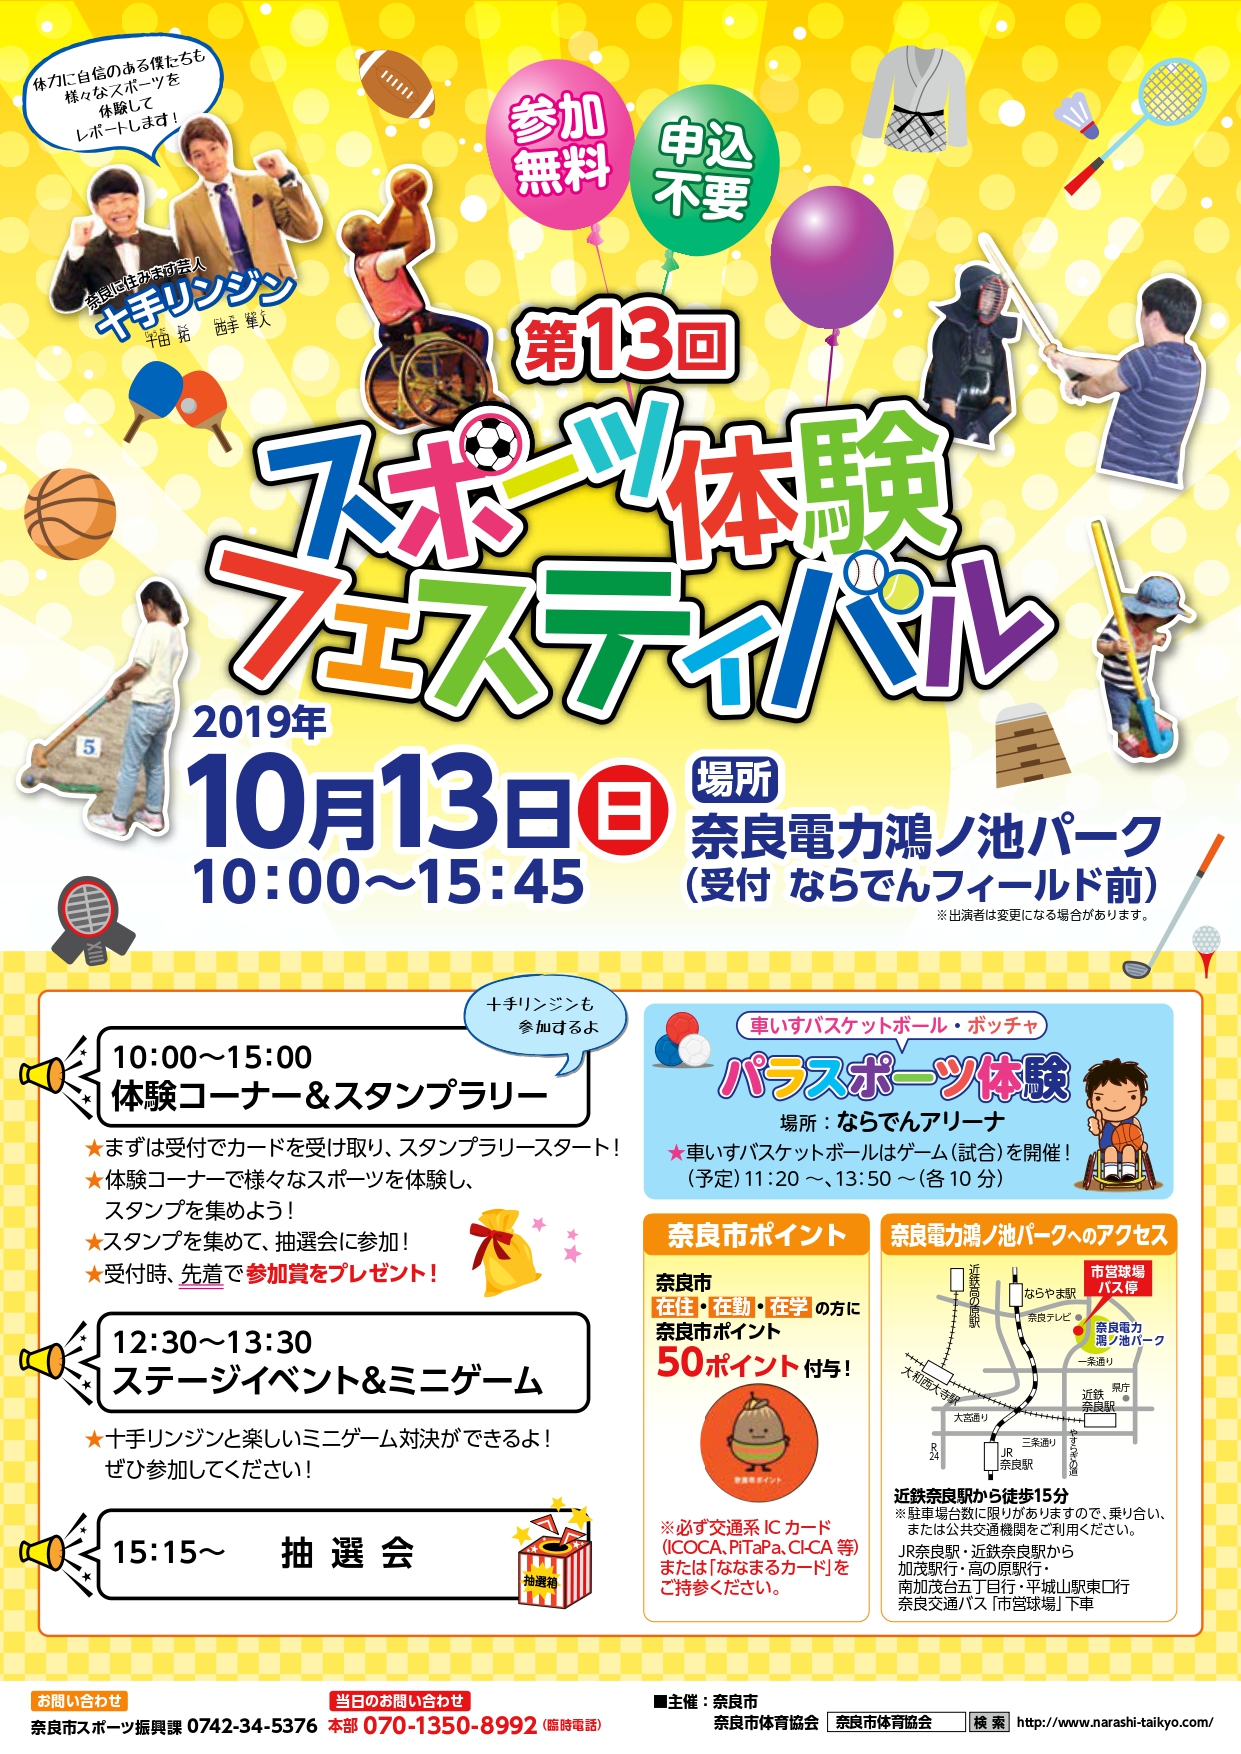 「第13回スポーツ体験フェスティバル」の開催について（令和元年10月4日発表）の画像